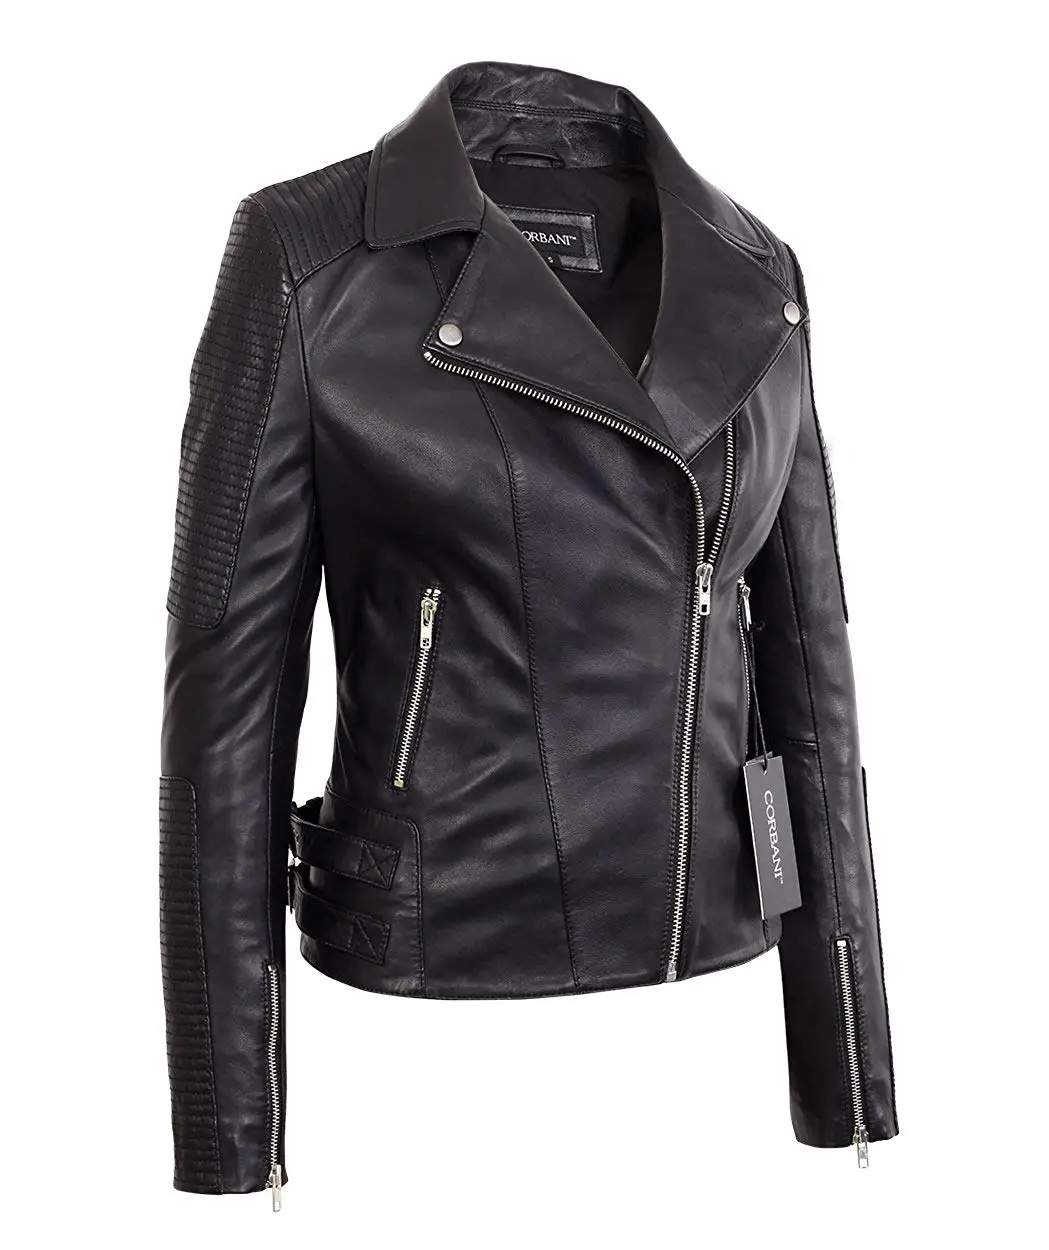 Cheap Vintage Black Leather Bomber Jacket, find Vintage Black Leather ...